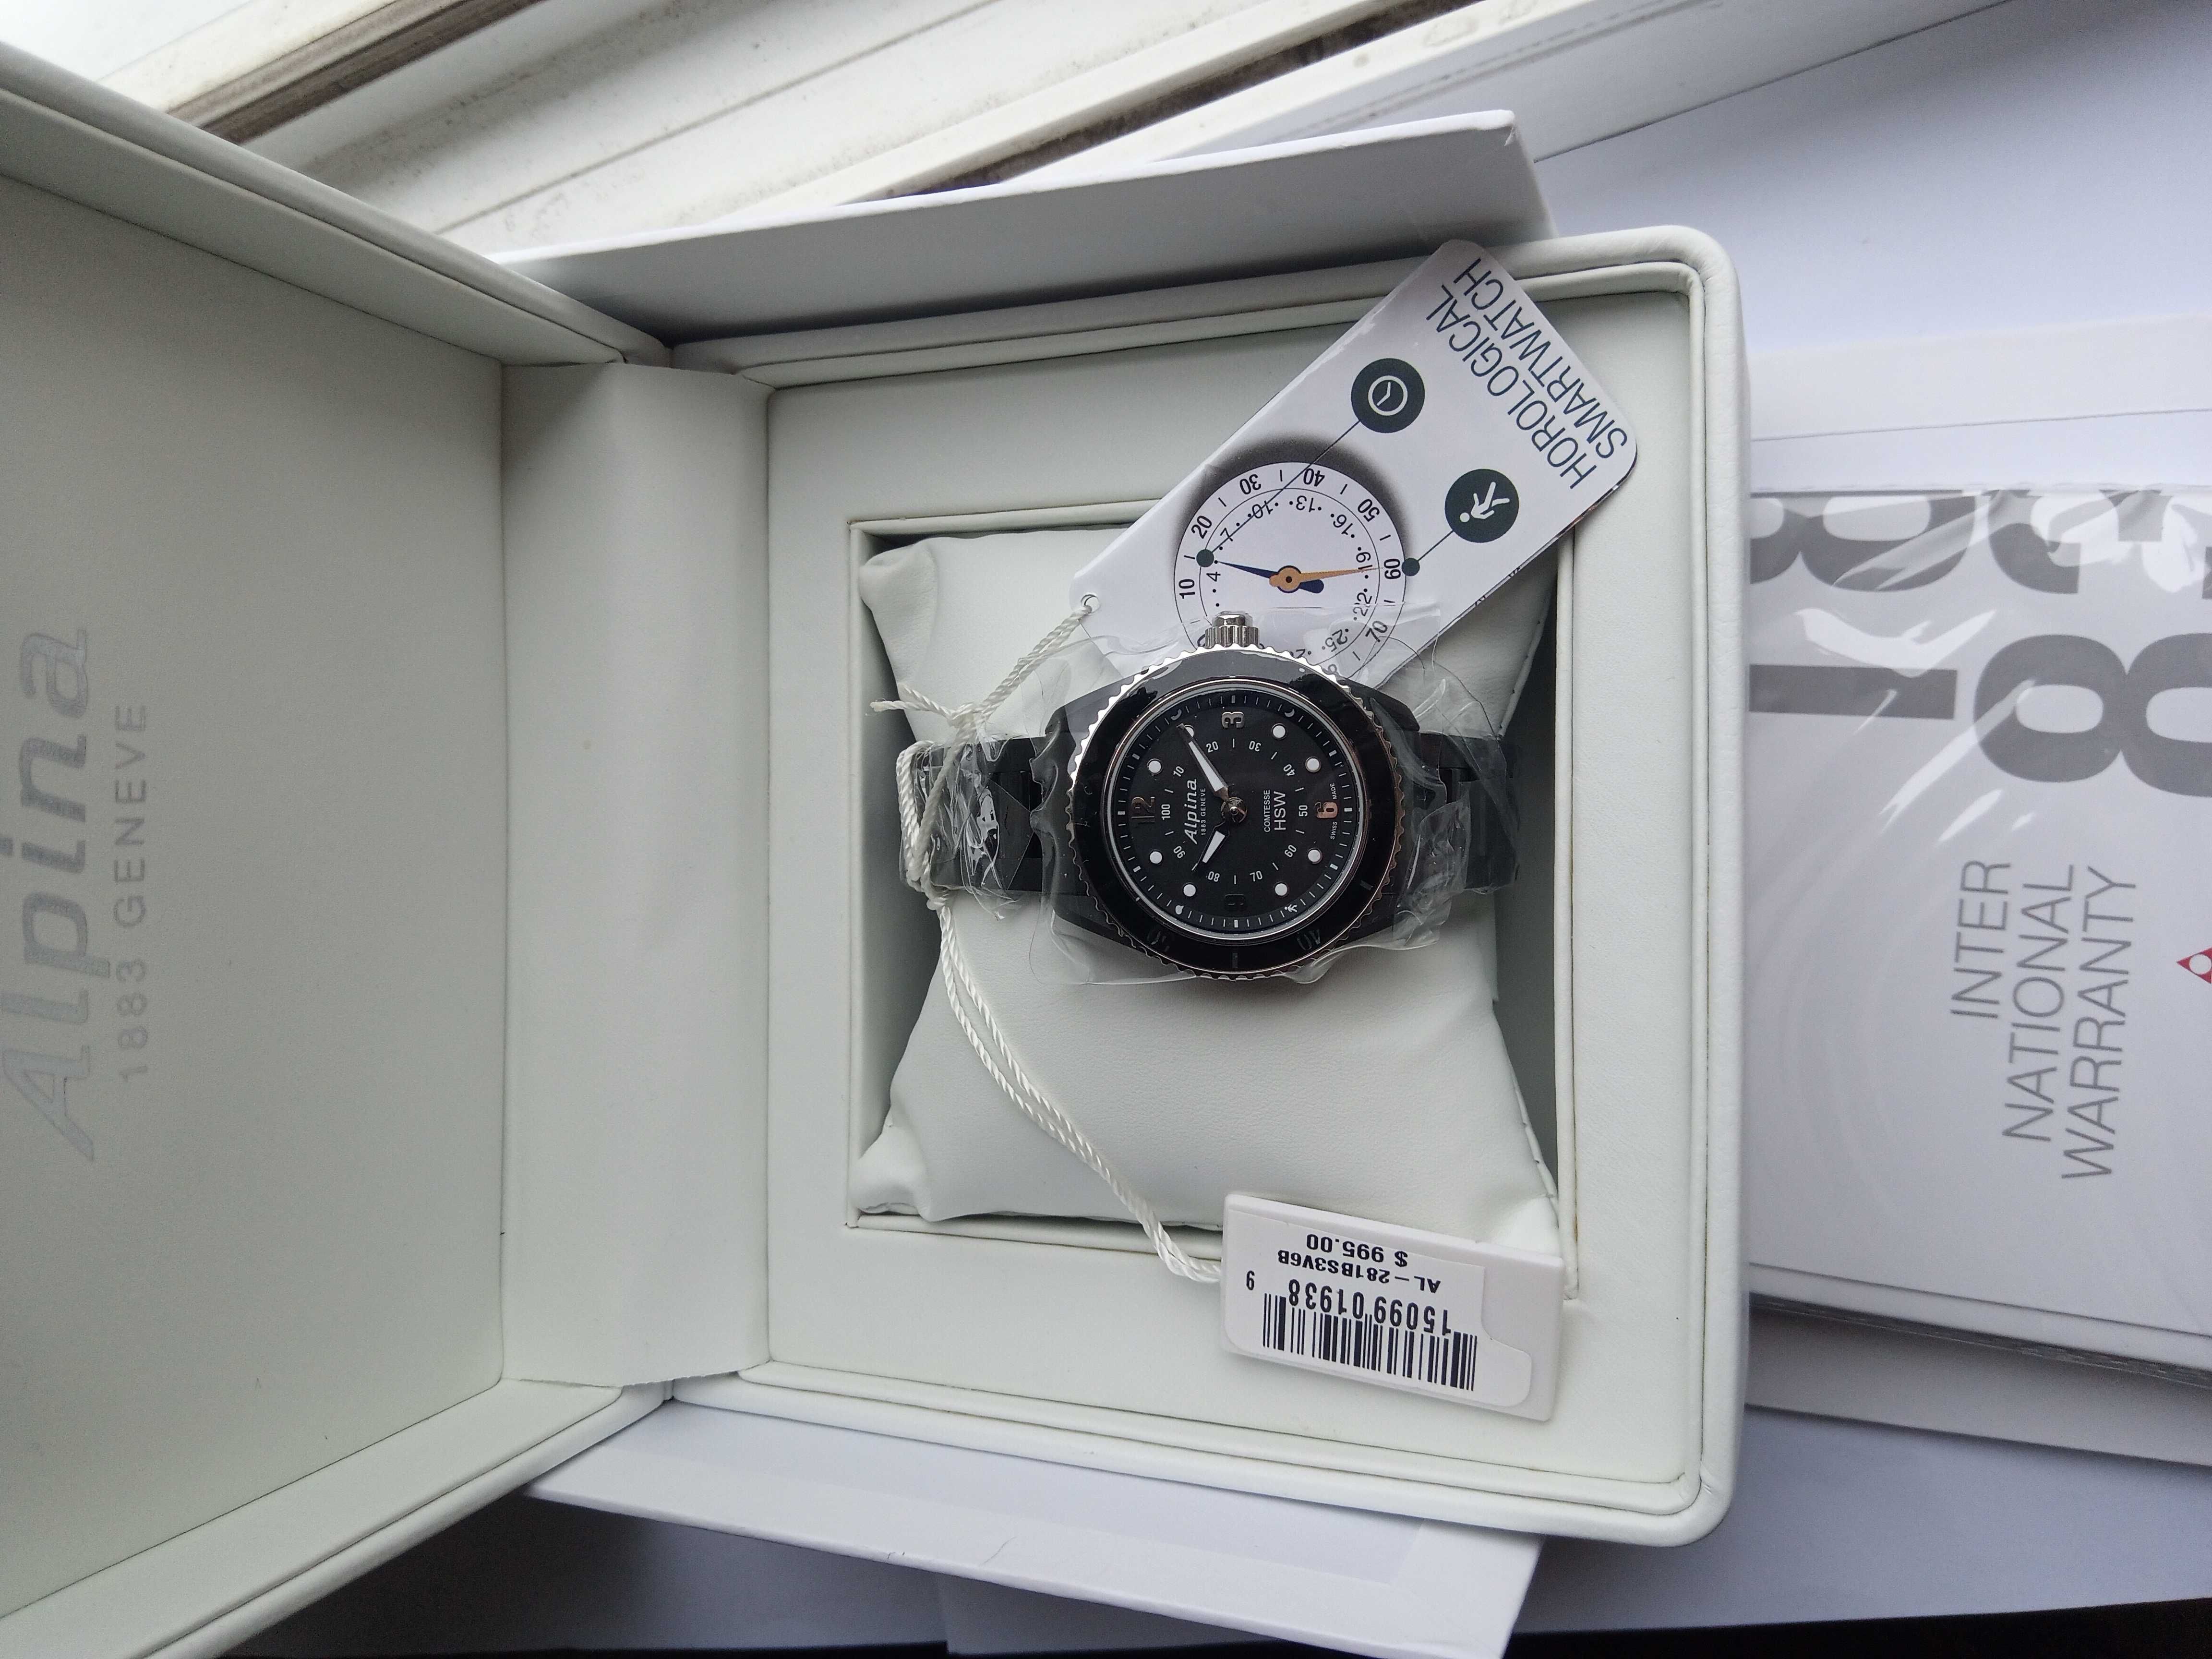 Шикарные швейцарские женские умные часы Alpina AL-281BS3V6B, сапфир